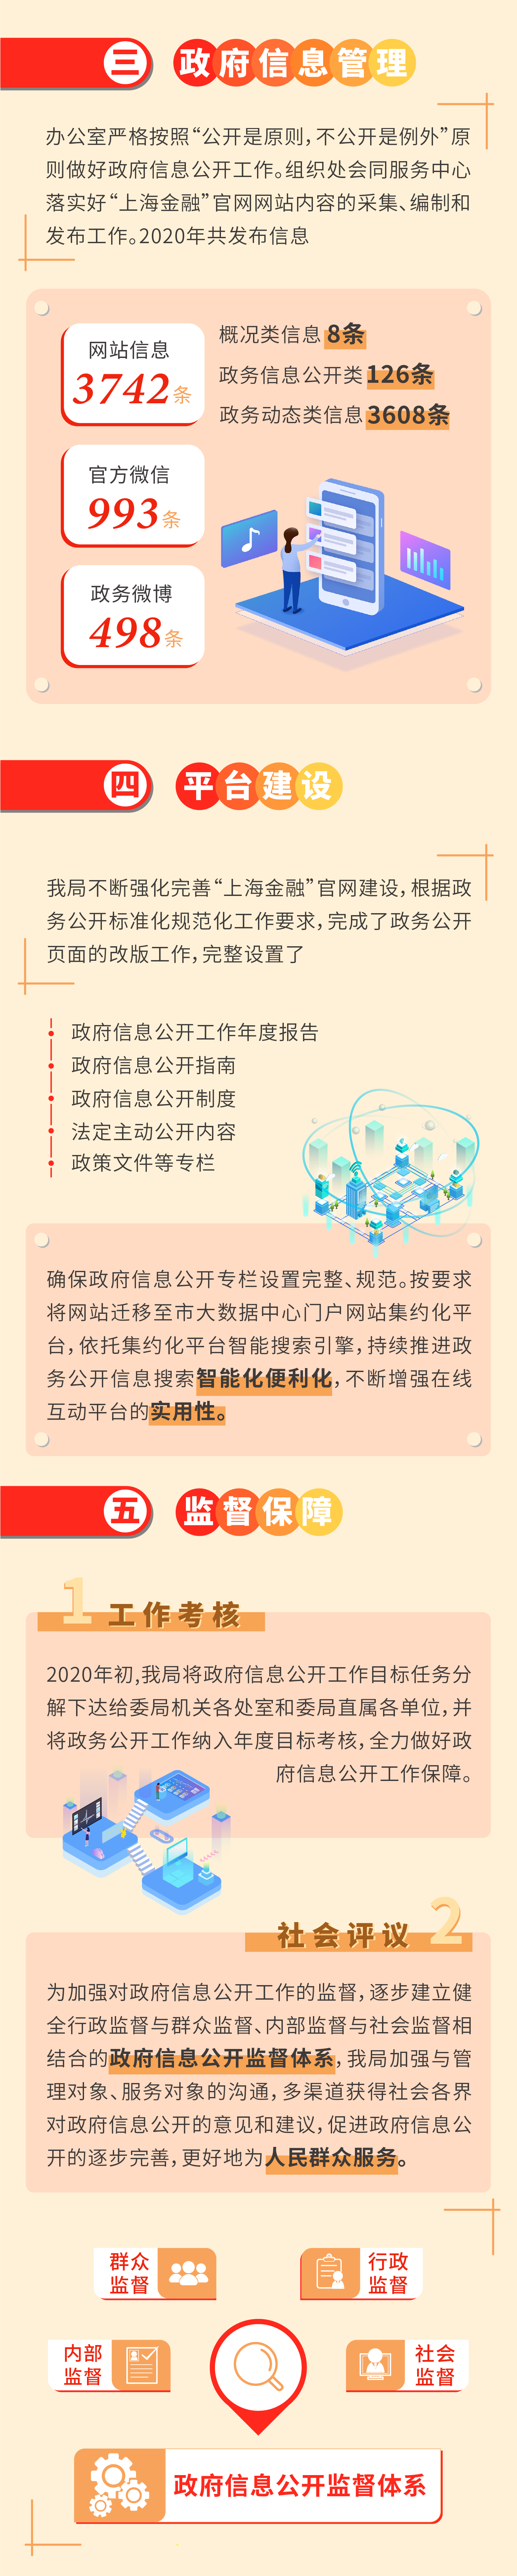 2020上海市地方金融监督管理局政府信息公开年度报告图文解读-2.png